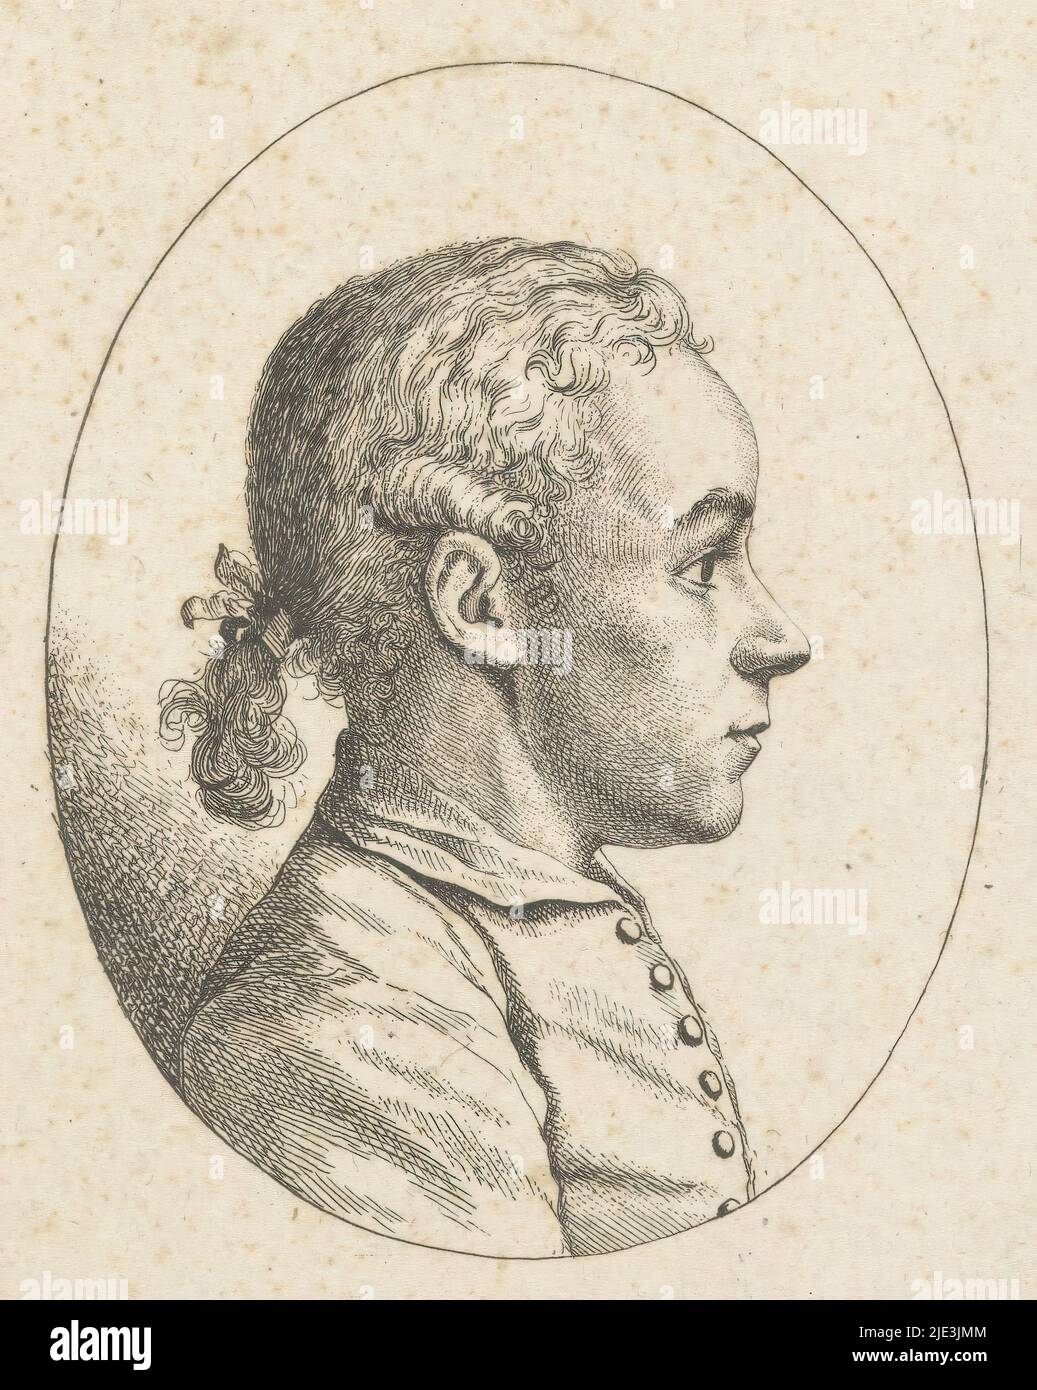 Portrait de Peter im Baumgarten, imprimeur: Georg Friedrich Schmoll, Allemagne, 1700 - 1785, papier, gravure, hauteur 122 mm × largeur 109 mm Banque D'Images